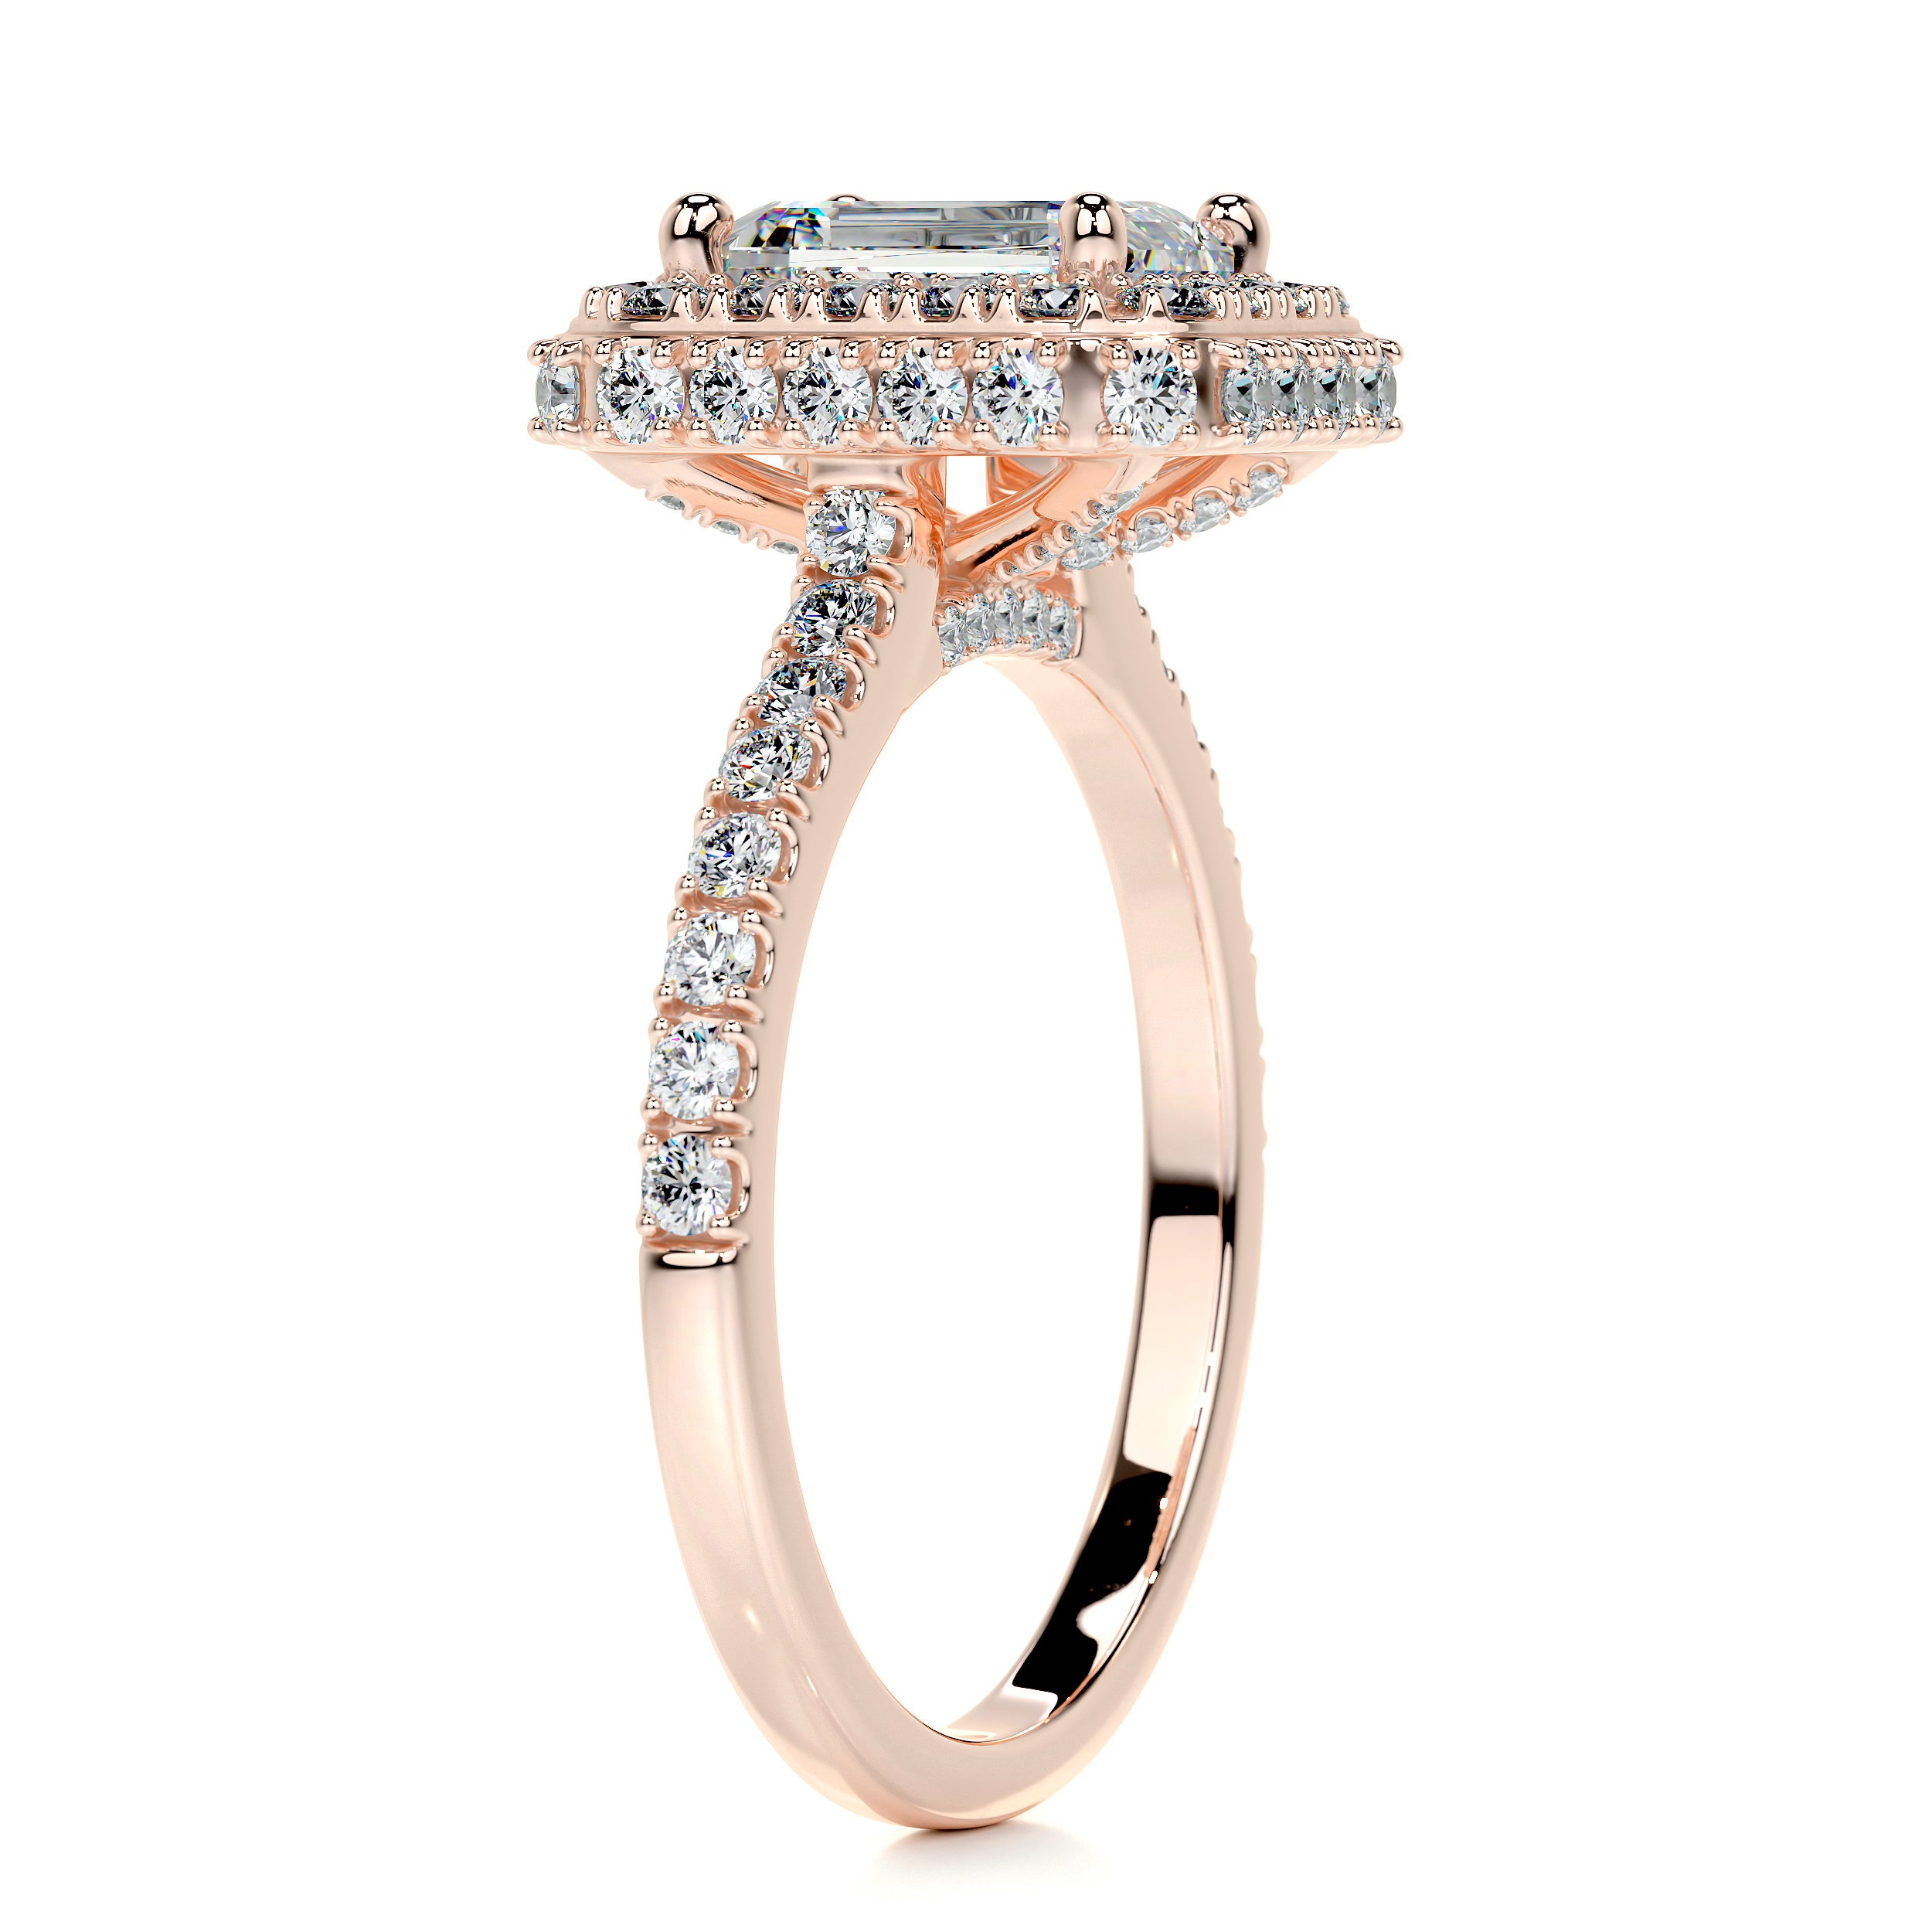 Lana Moissanite & Diamonds Ring -14K Rose Gold